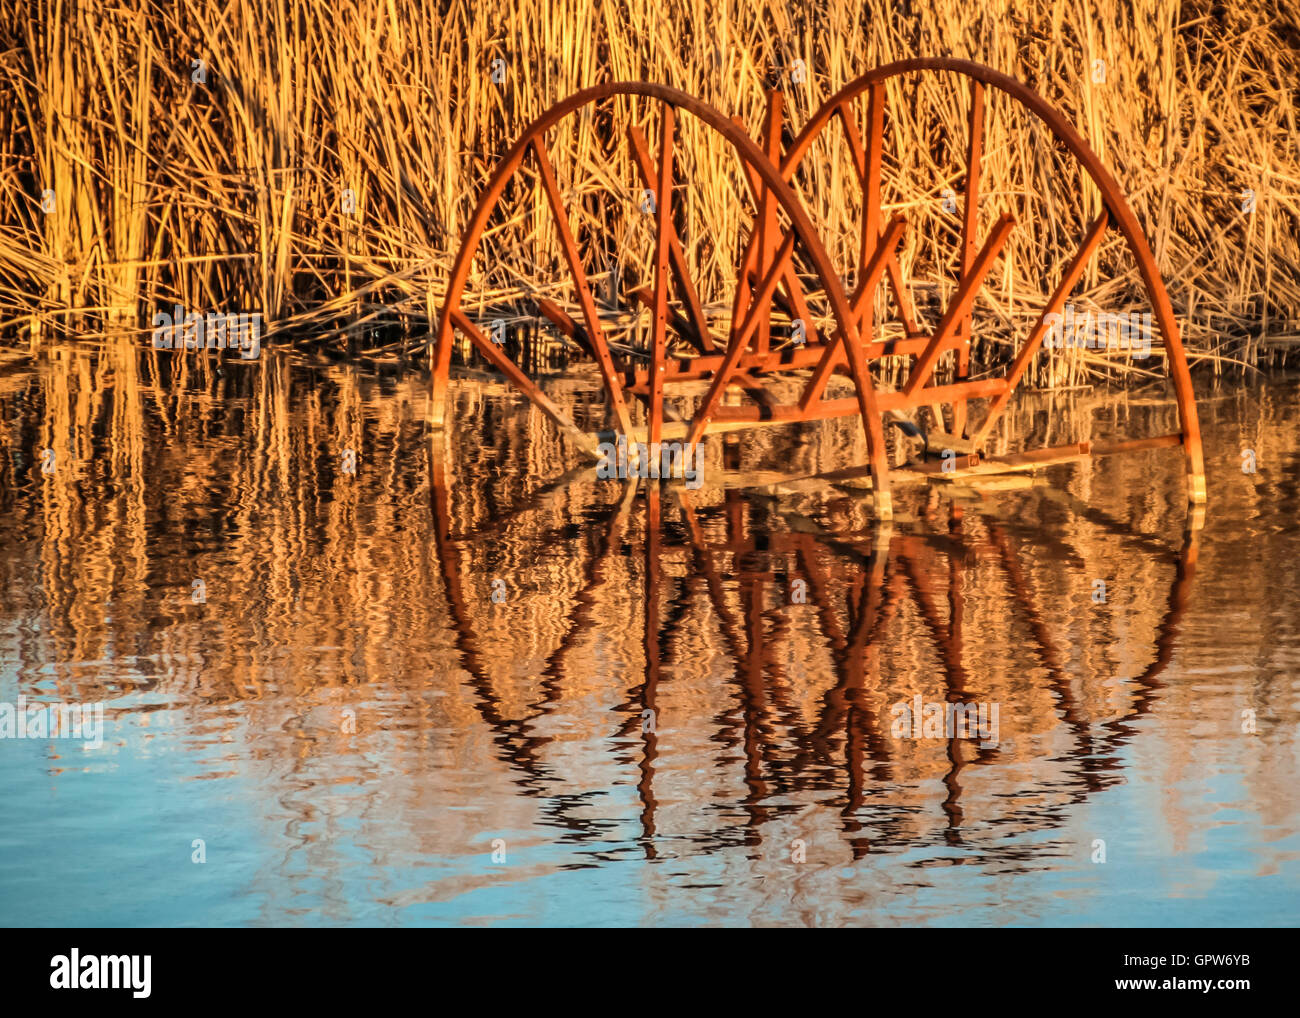 Ein rostigen Rad von landwirtschaftlichen Ernten Ausrüstung legt Ruhelagerung teilweise unter Wasser in einem nahe gelegenen Teich, umgeben von hohen grass Stockfoto